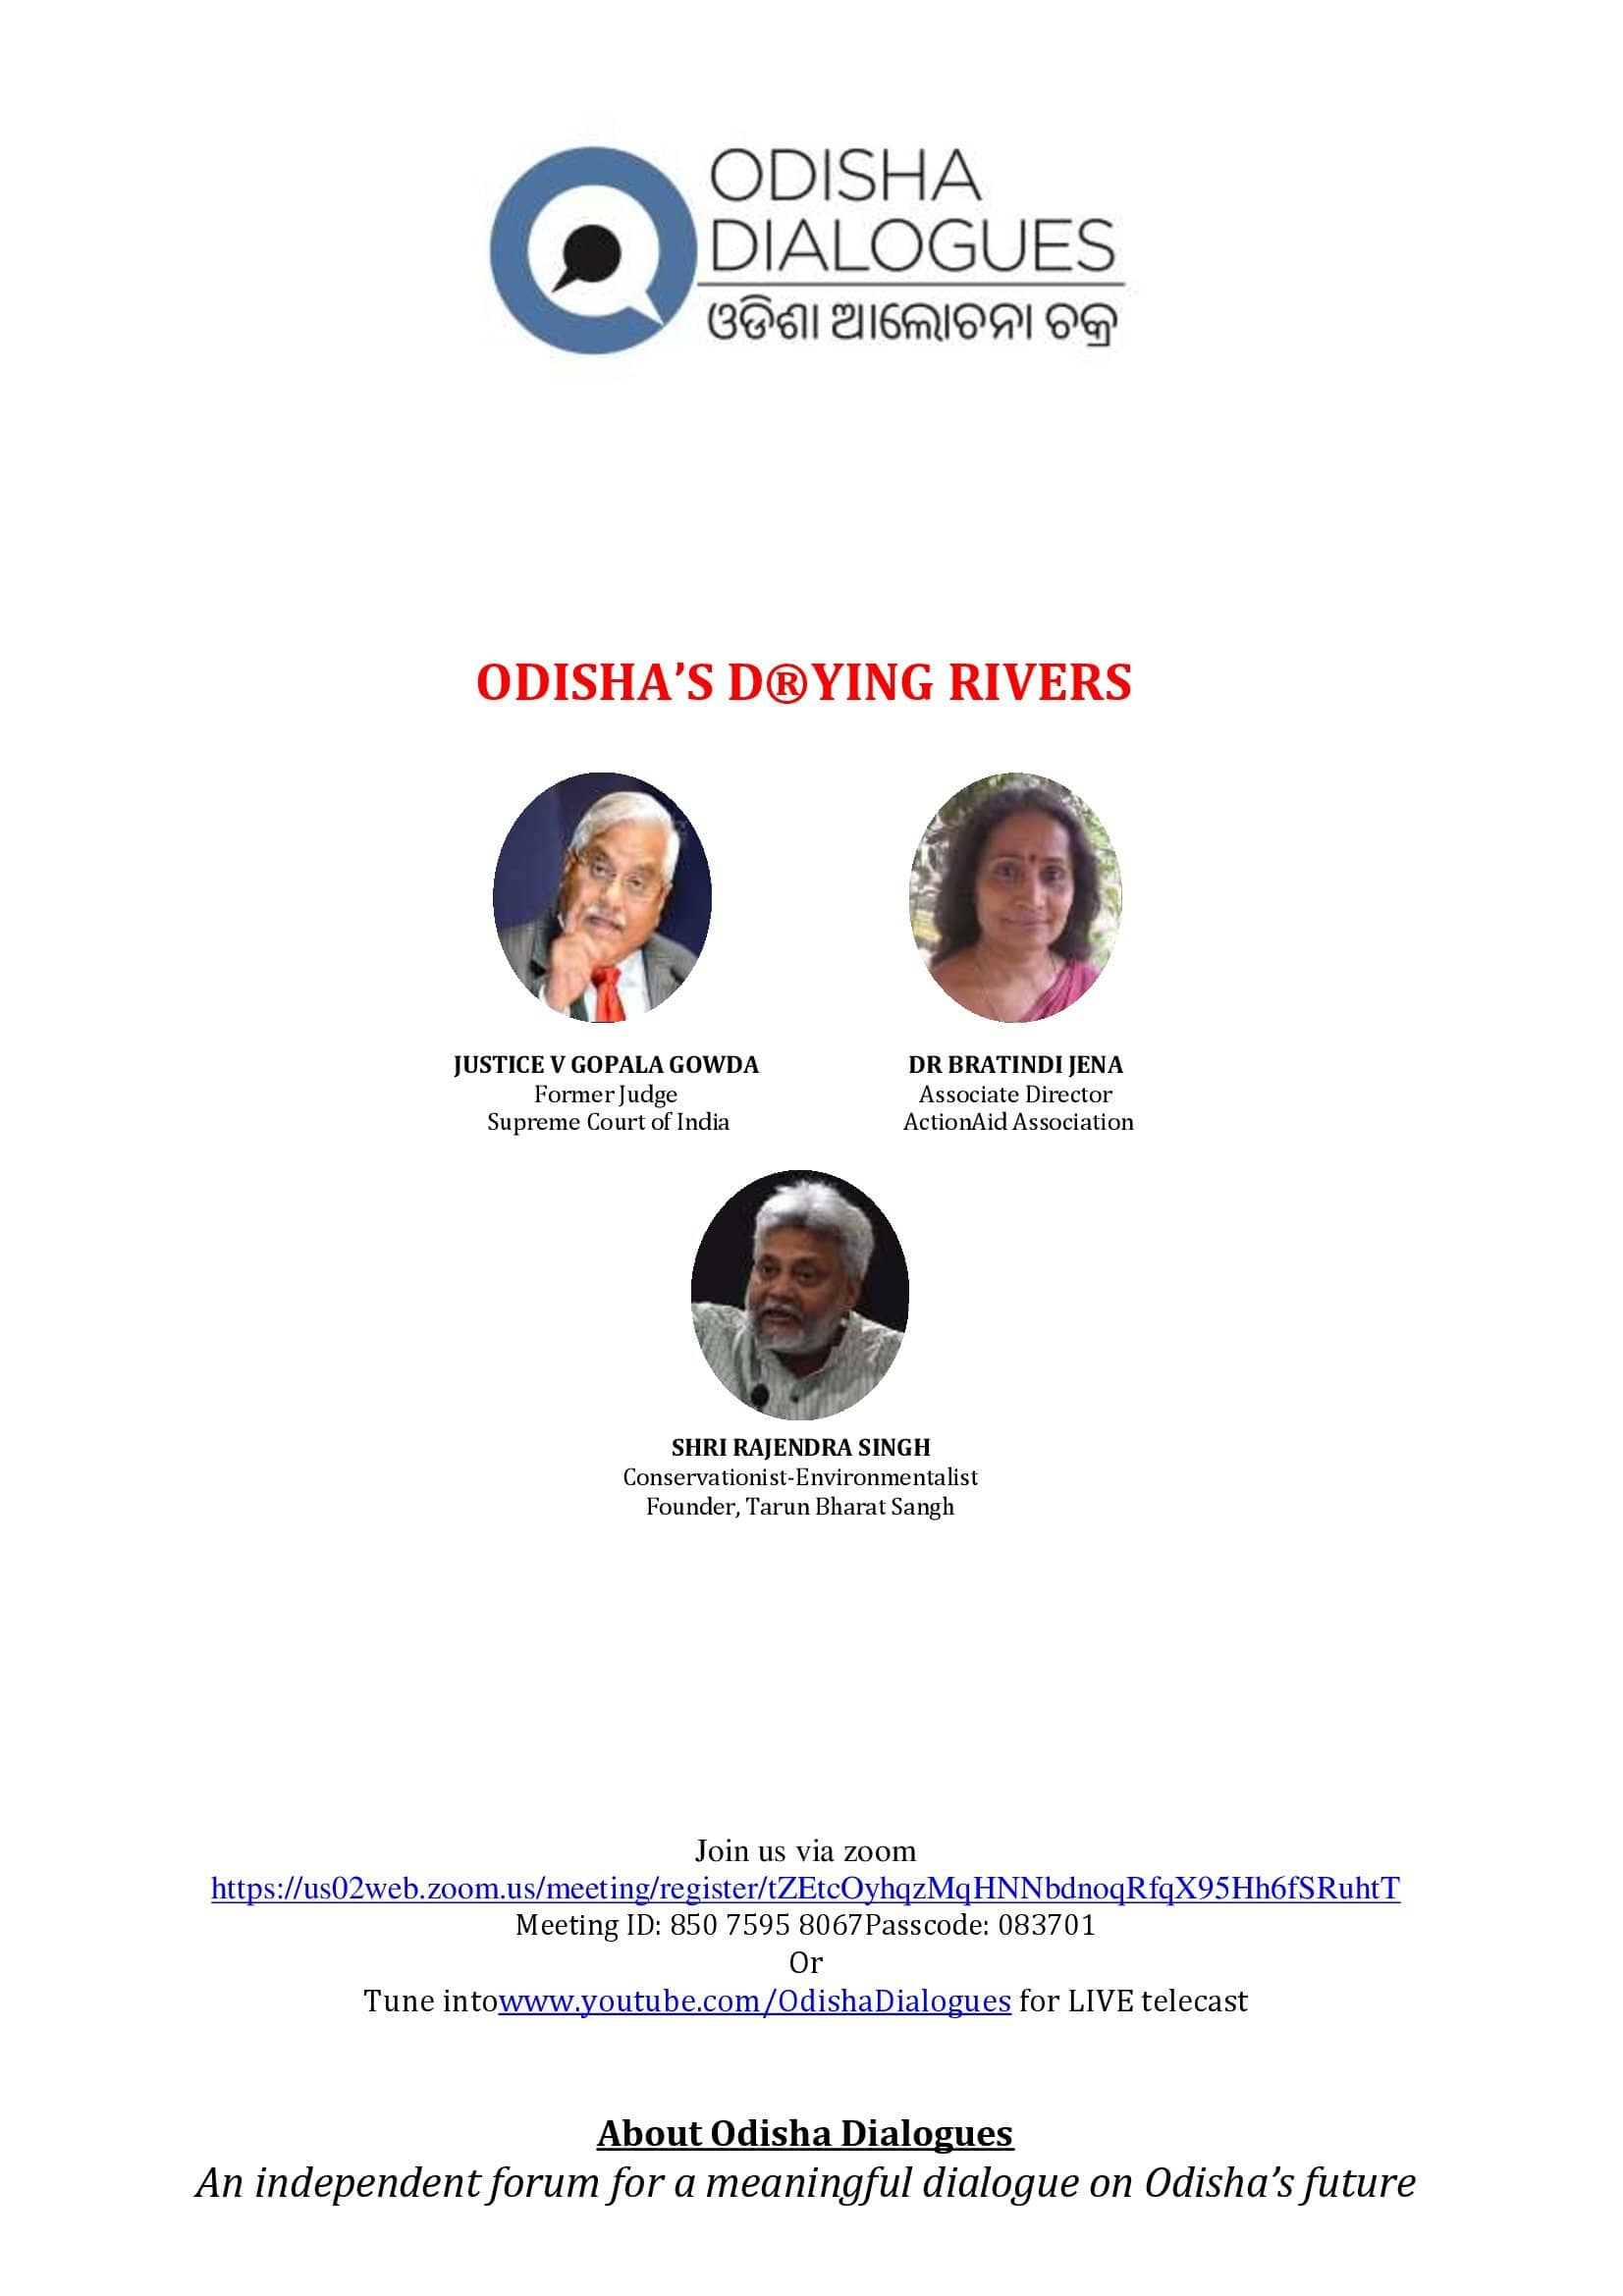 ODISHA’S D(R)YING RIVERS